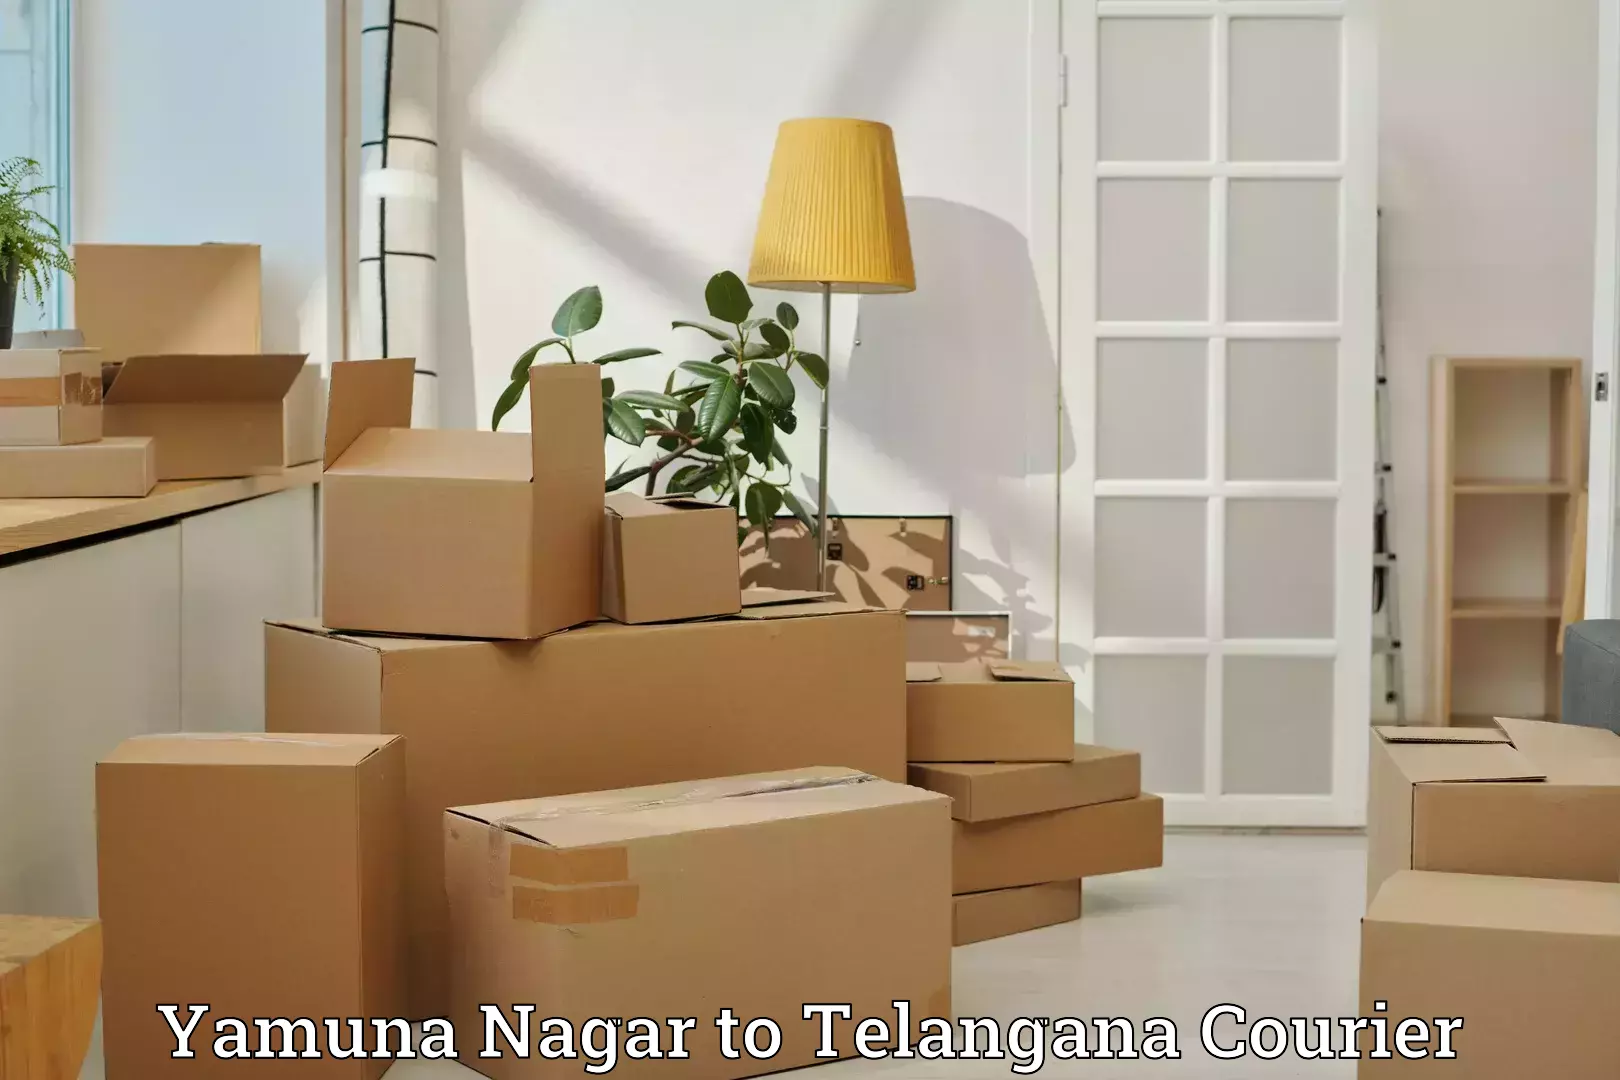 Luggage shipment specialists Yamuna Nagar to Manneguda